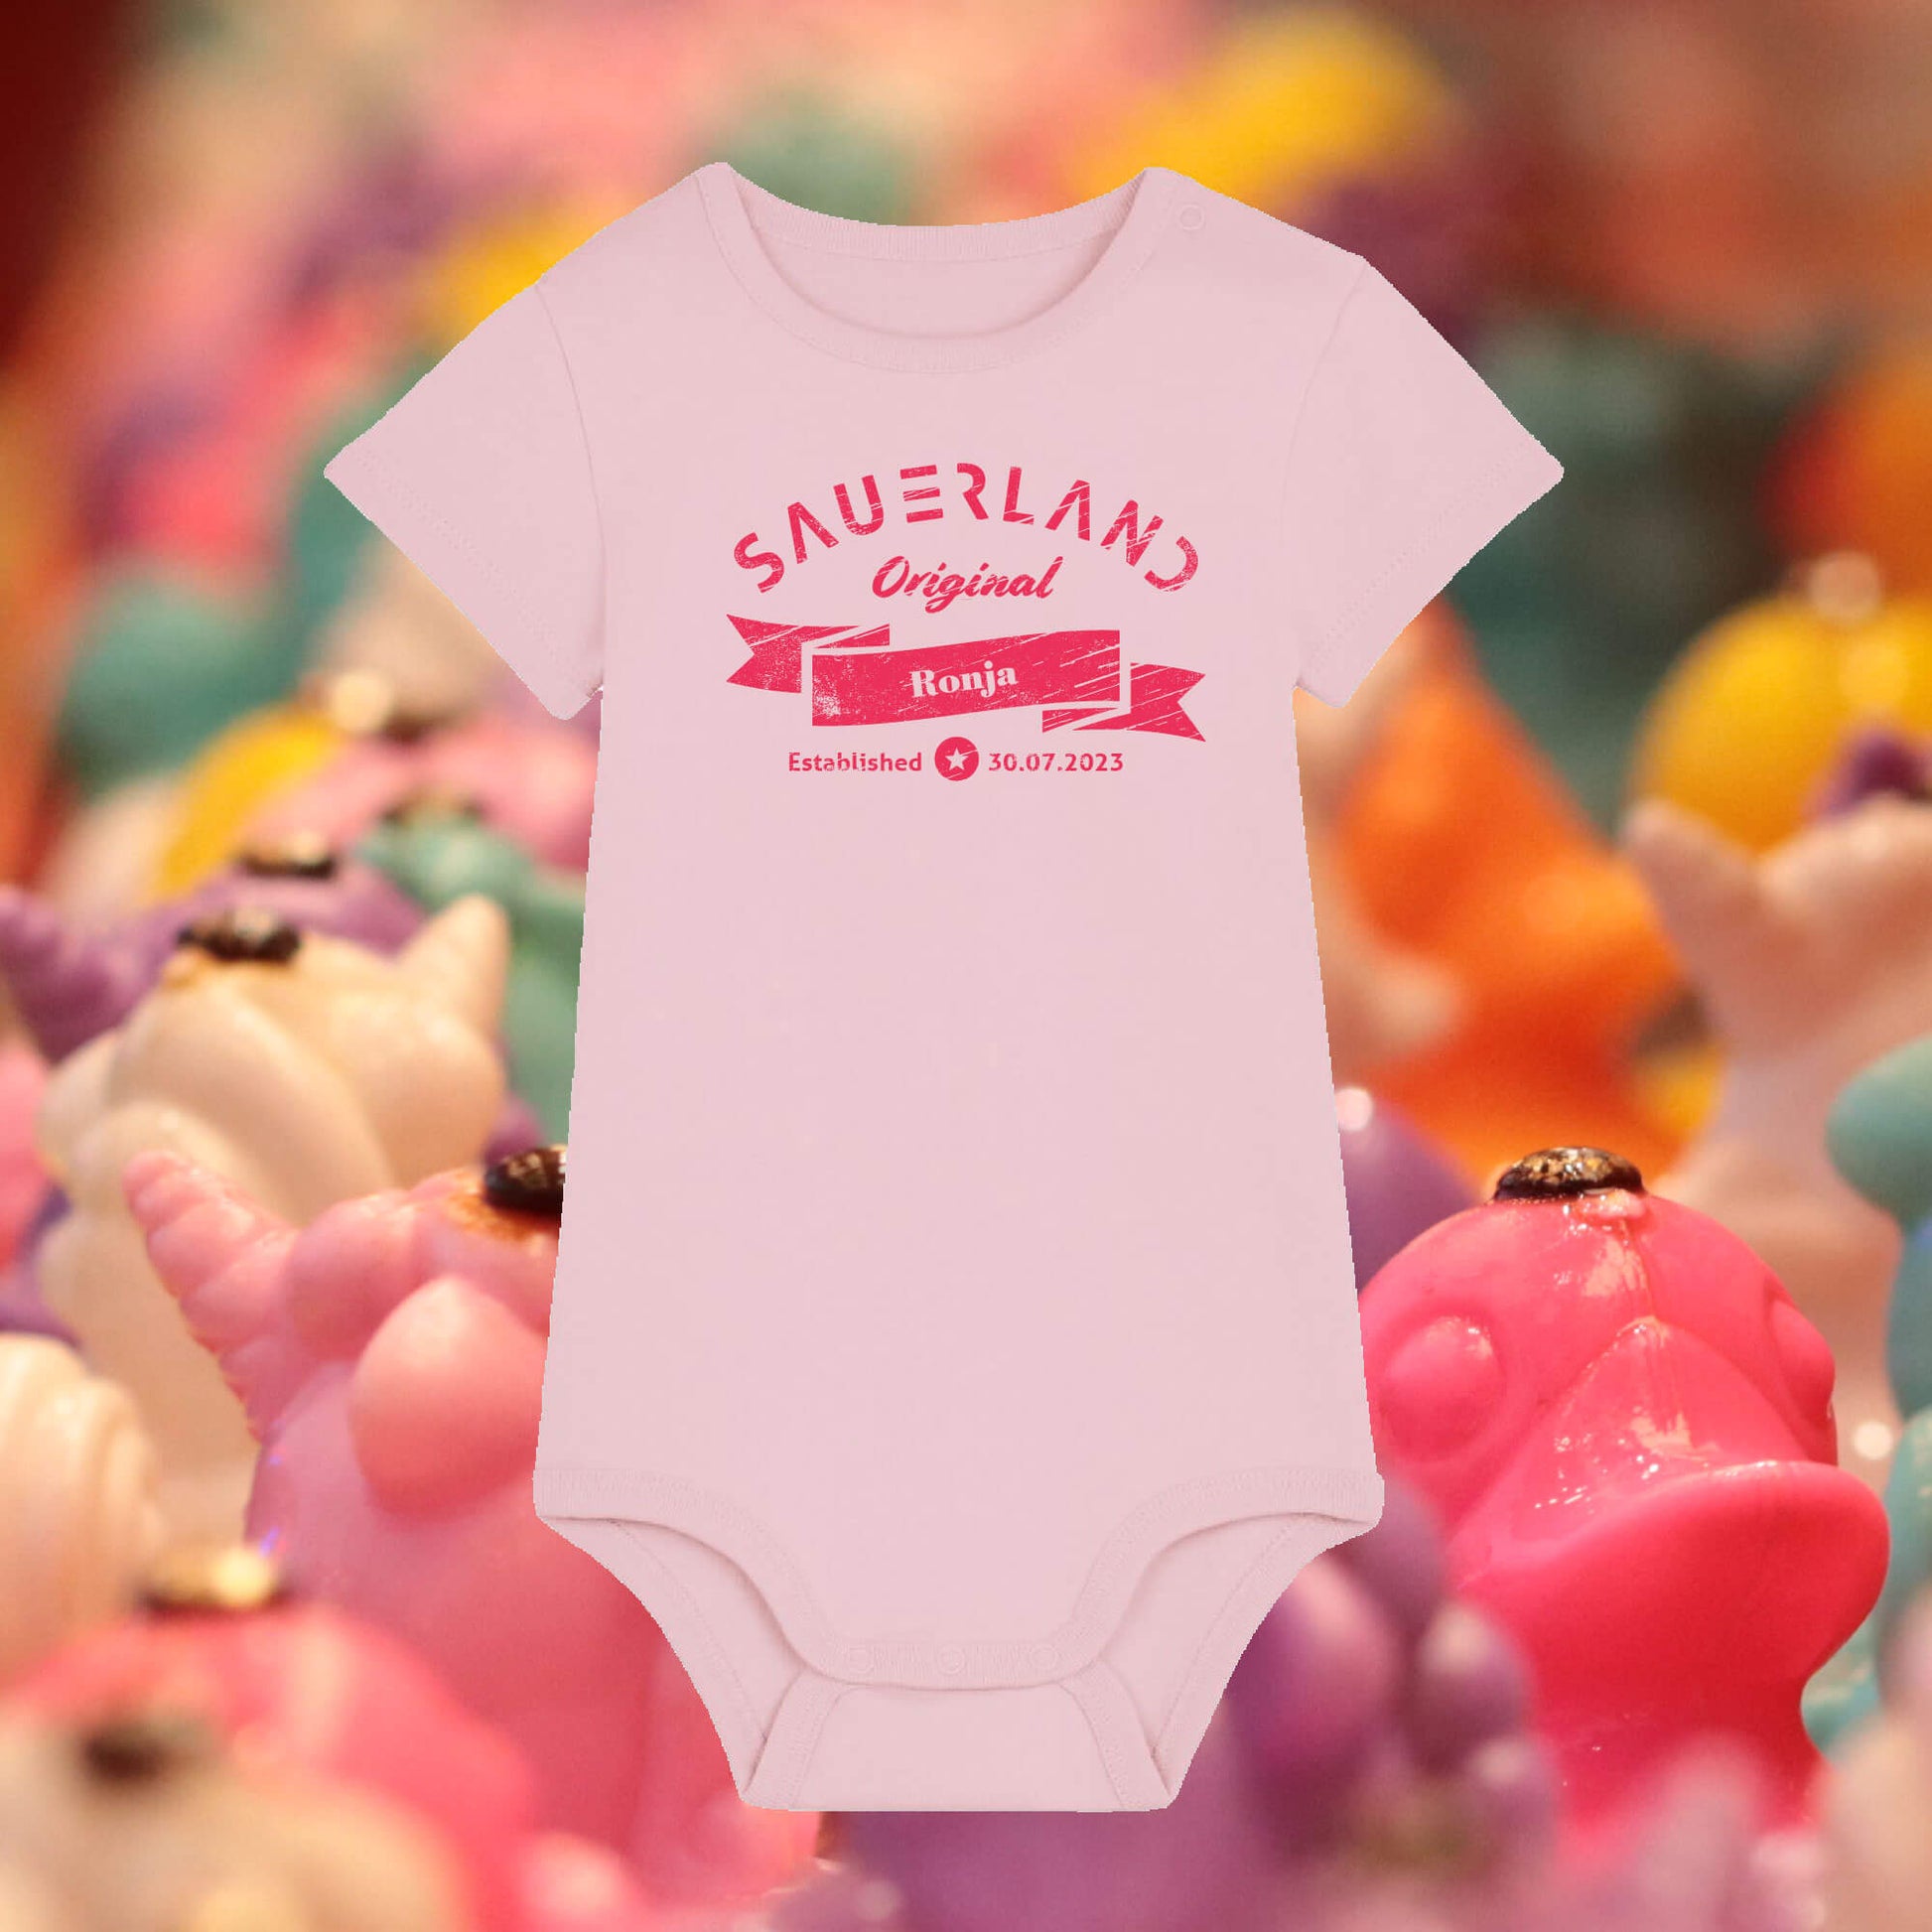 Rosa farbiger Baby-Body mit pinkfarbigem Aufdruck Sauerland Original, dem Vornamen und Geburtsdatum des Babys.